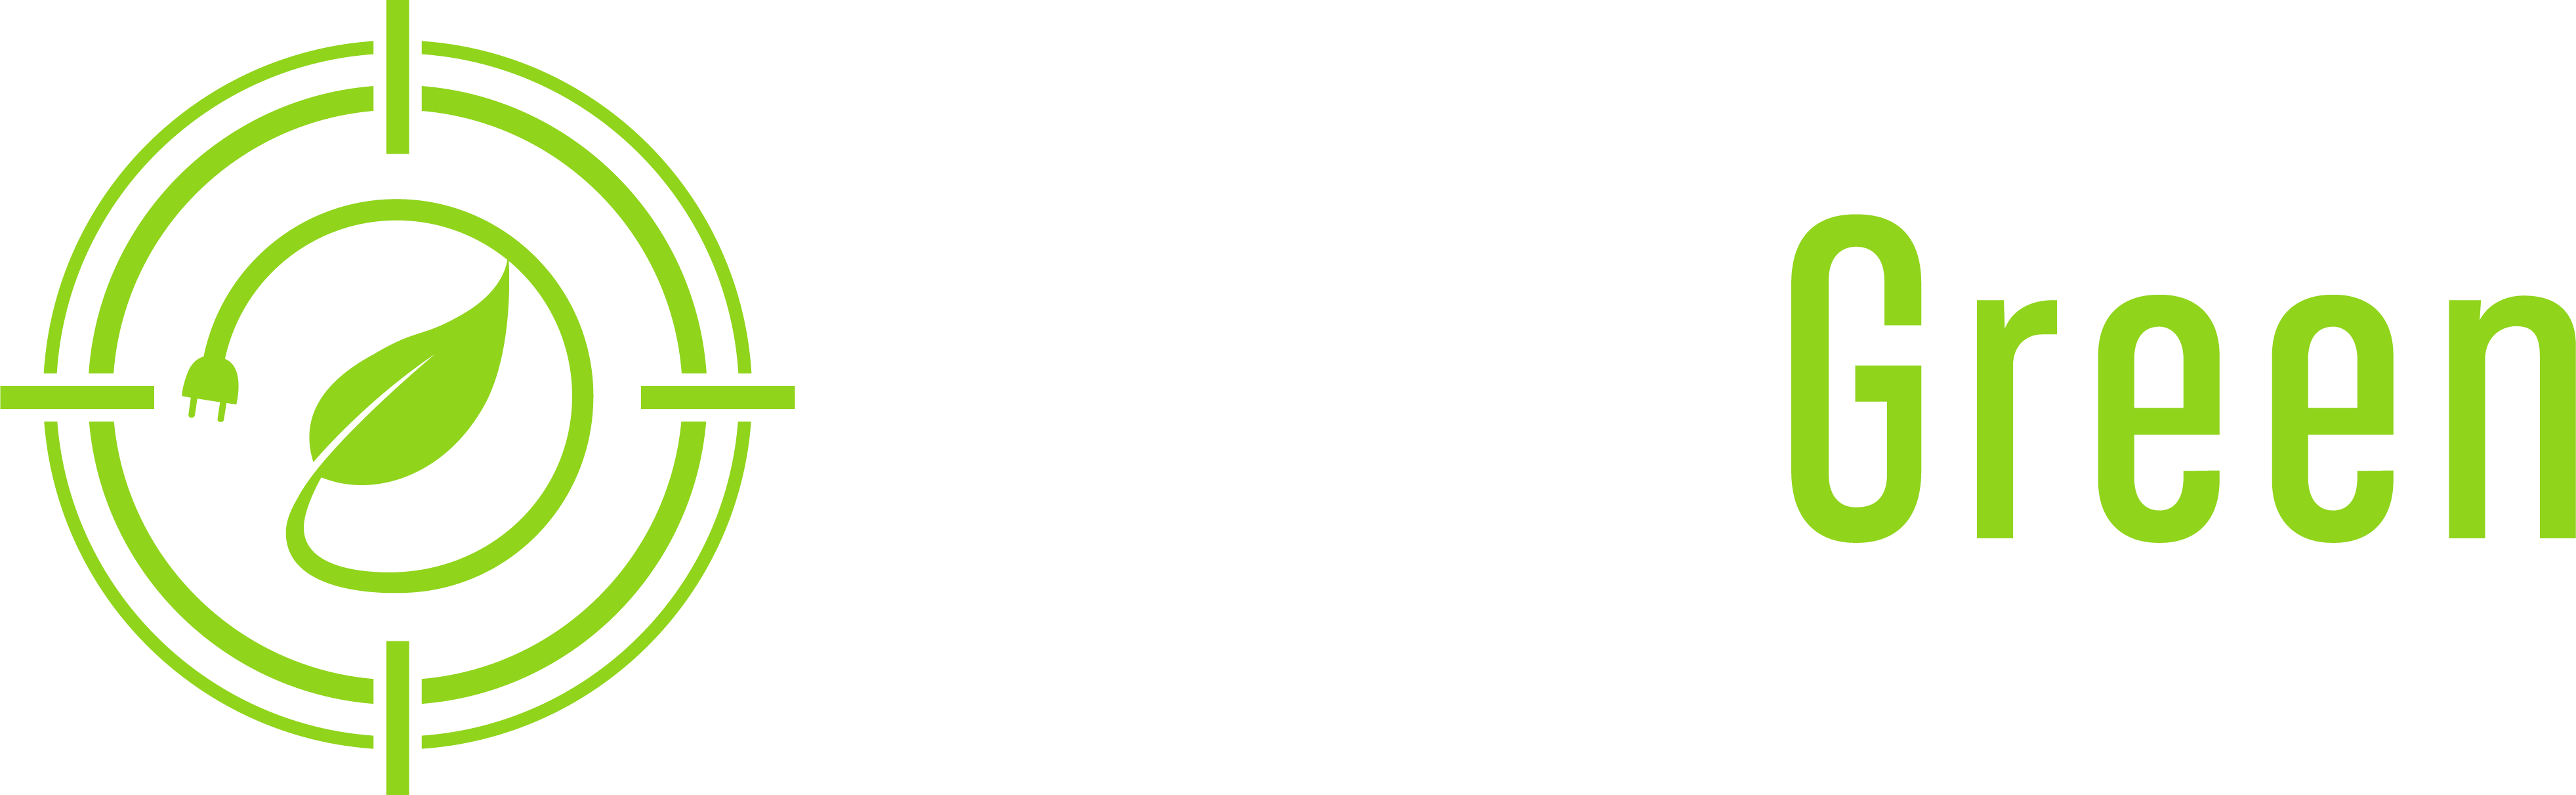 Target Green Logo-01